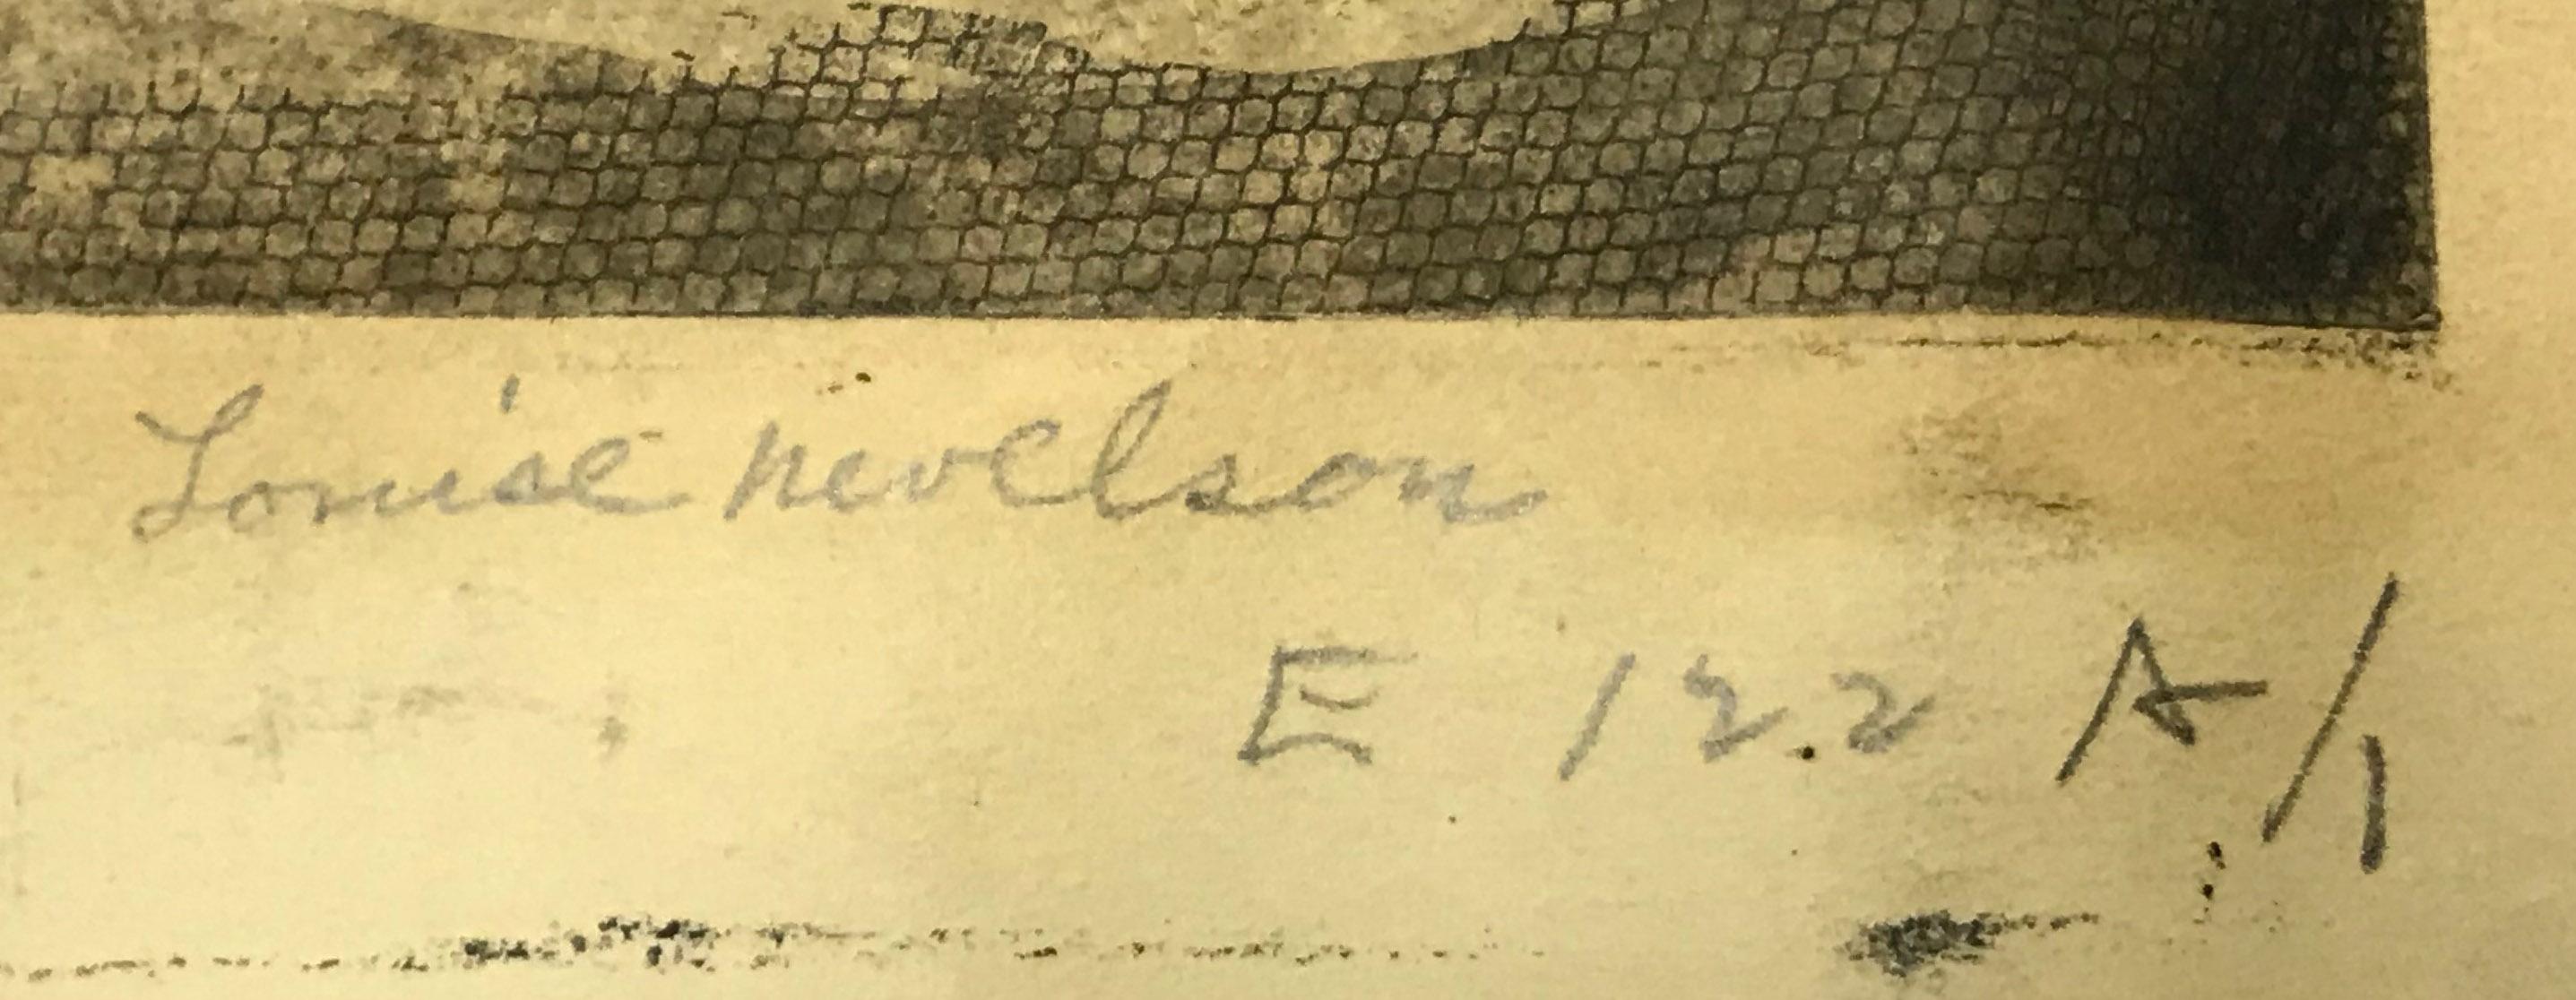 Bäume (Bäume im Kreis)
Radierung und Kaltnadelradierung mit Monotypie, 1953-1955
Mit Bleistift signiert
Ein nicht aufgezeichneter Probedruck, gedruckt auf schwerem Velin im Atelier 17, vor der Verkleinerung der Platte. 
Referenz: Baro 29
Provenienz: